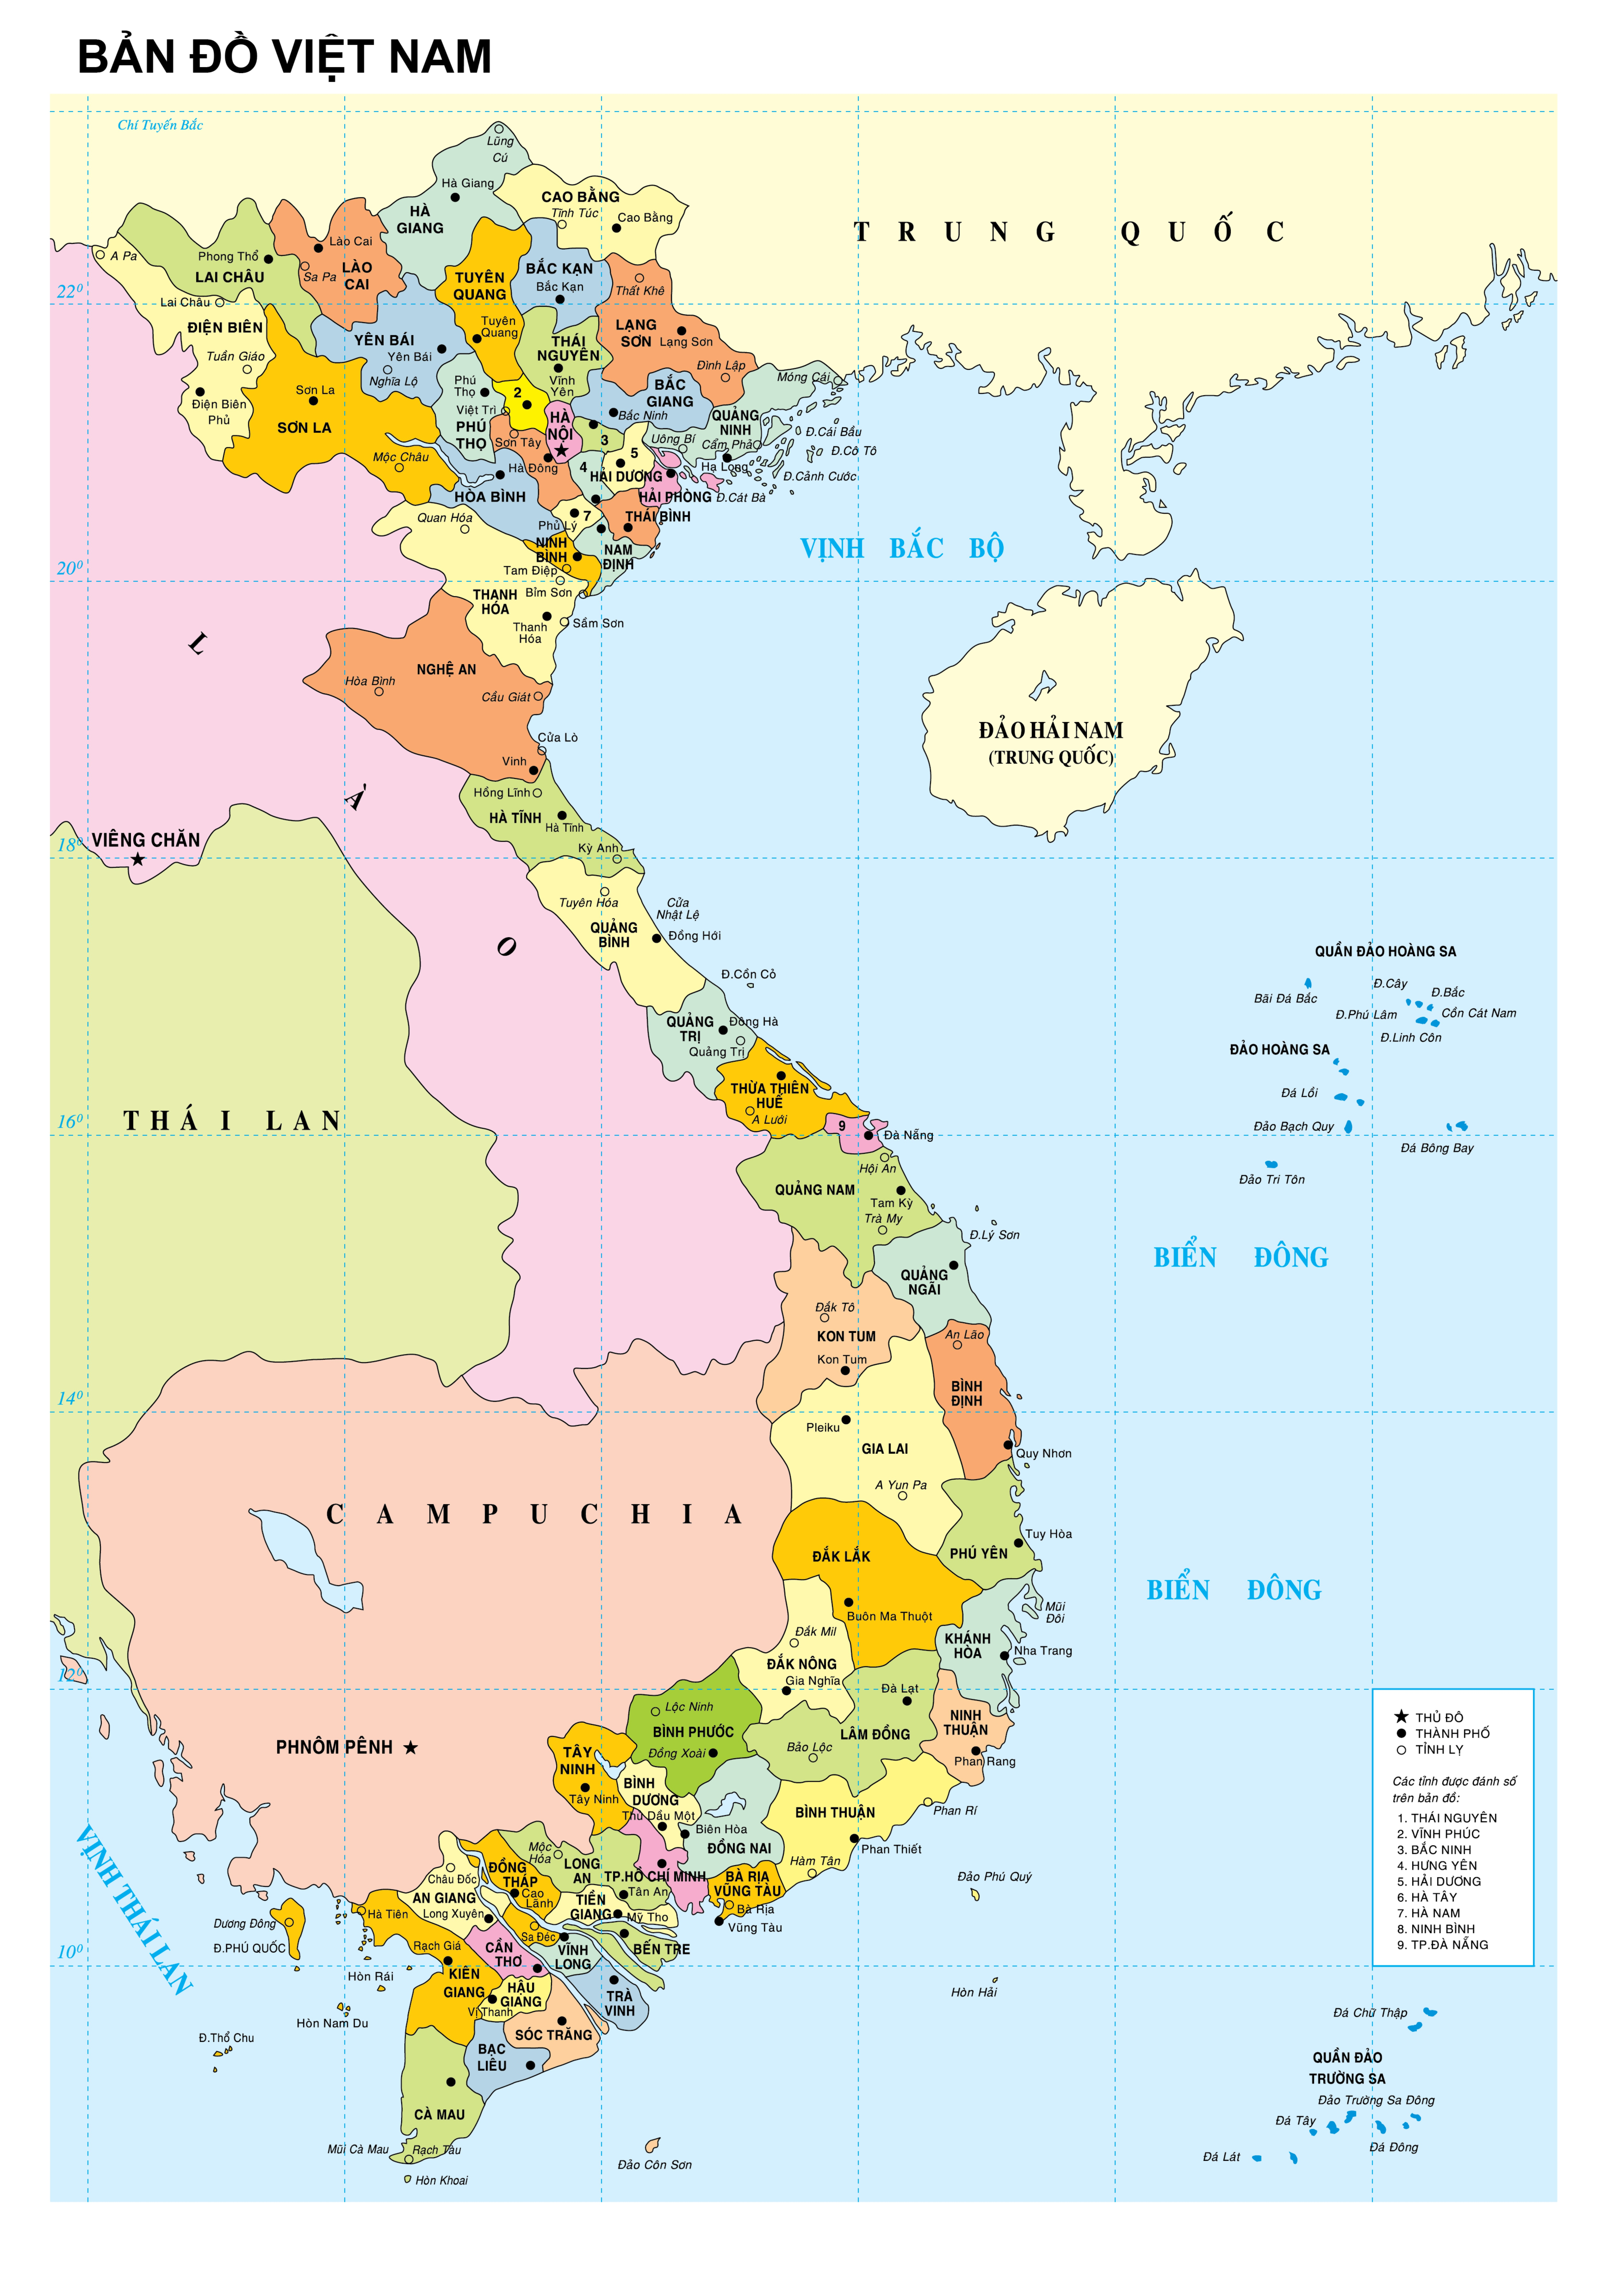 Bản đồ Miền Bắc trên bản đồ Việt Nam